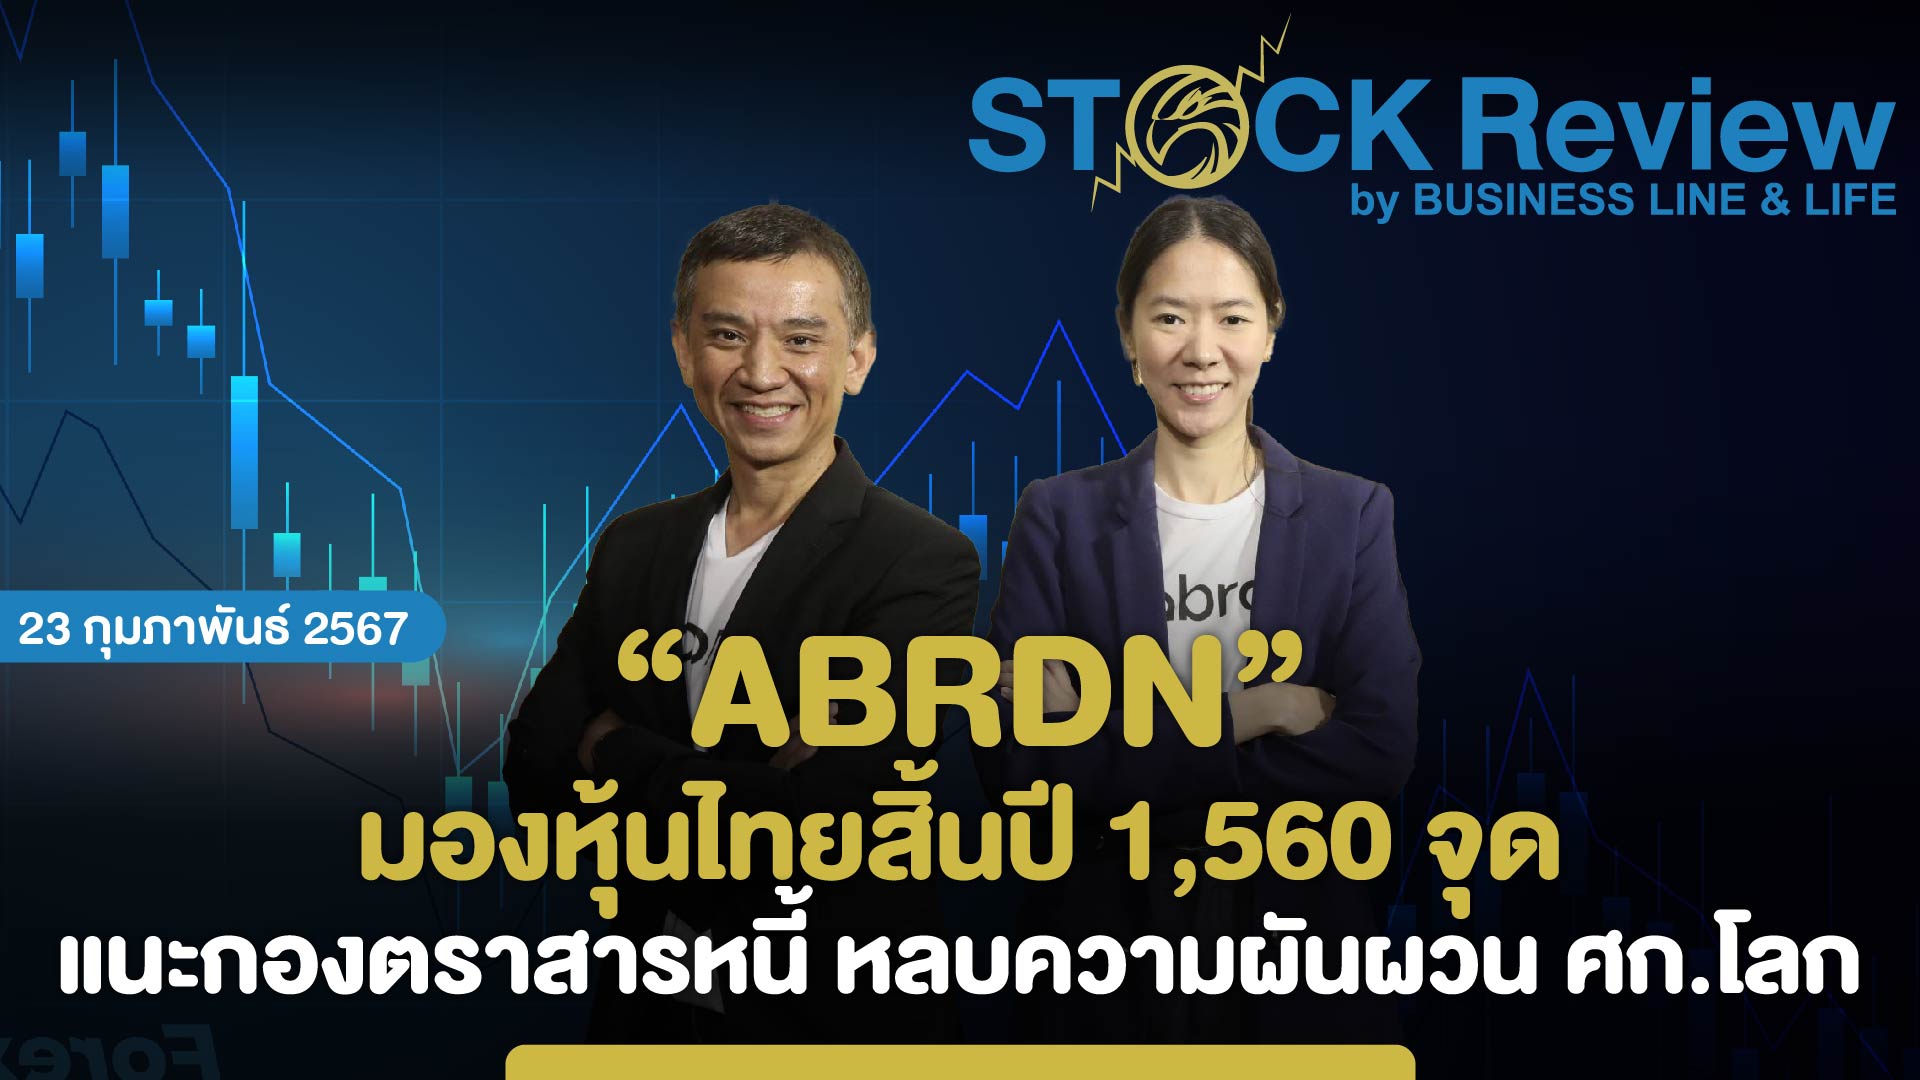 บลจ.อเบอร์ดีน มองหุ้นไทยสิ้นปี 1,560 จุด แนะกองตราสารหนี้ หลบความผันผวนเศรษฐกิจโลก